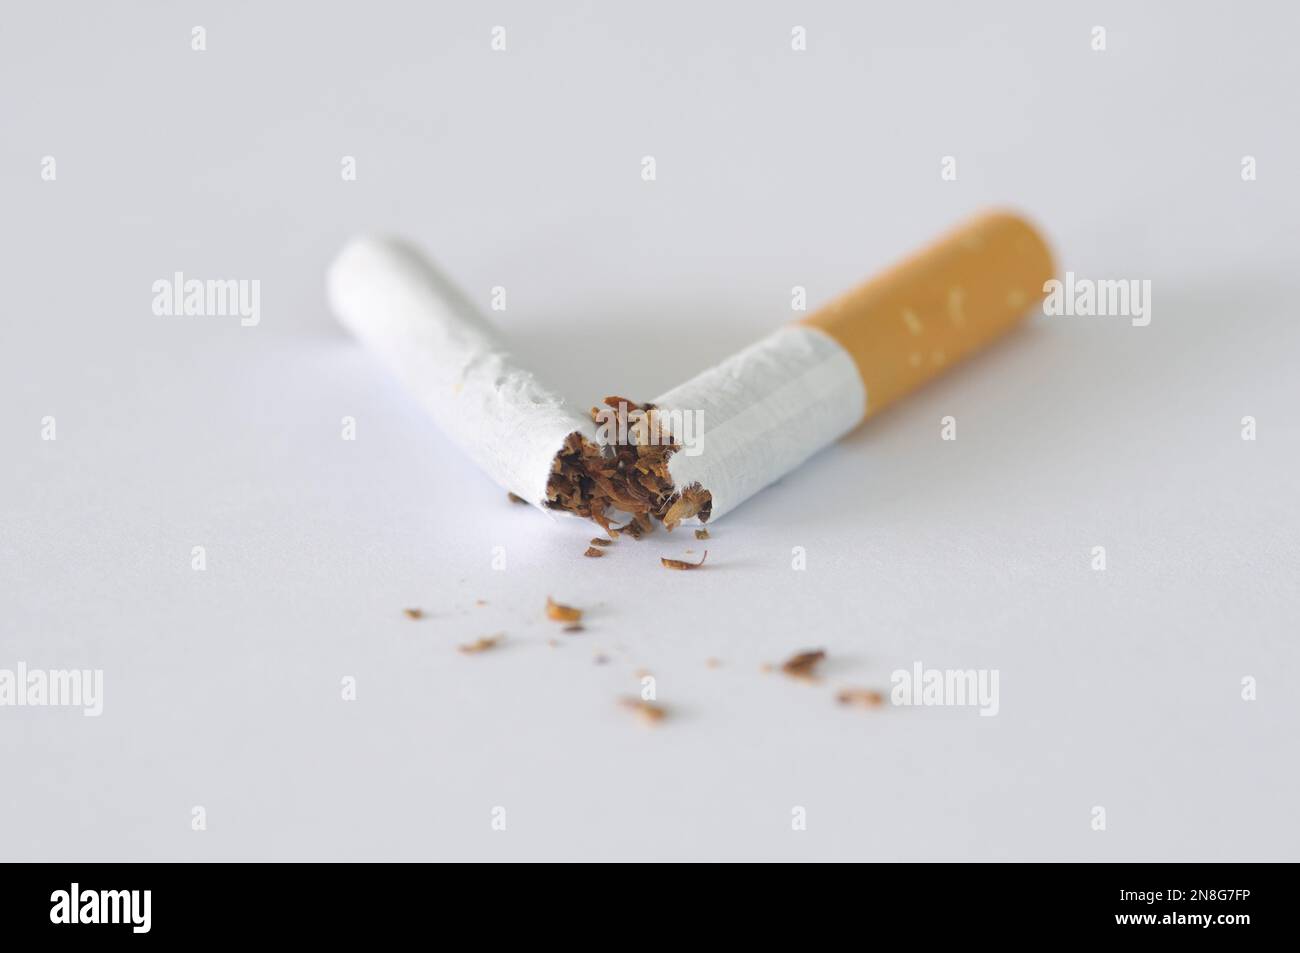 Gros plan d'une cigarette cassée en deux sur un fond blanc. Concepts : cesser de fumer, cesser de fumer, renoncer à fumer, dépendance au tabagisme, mauvaises habitudes Banque D'Images